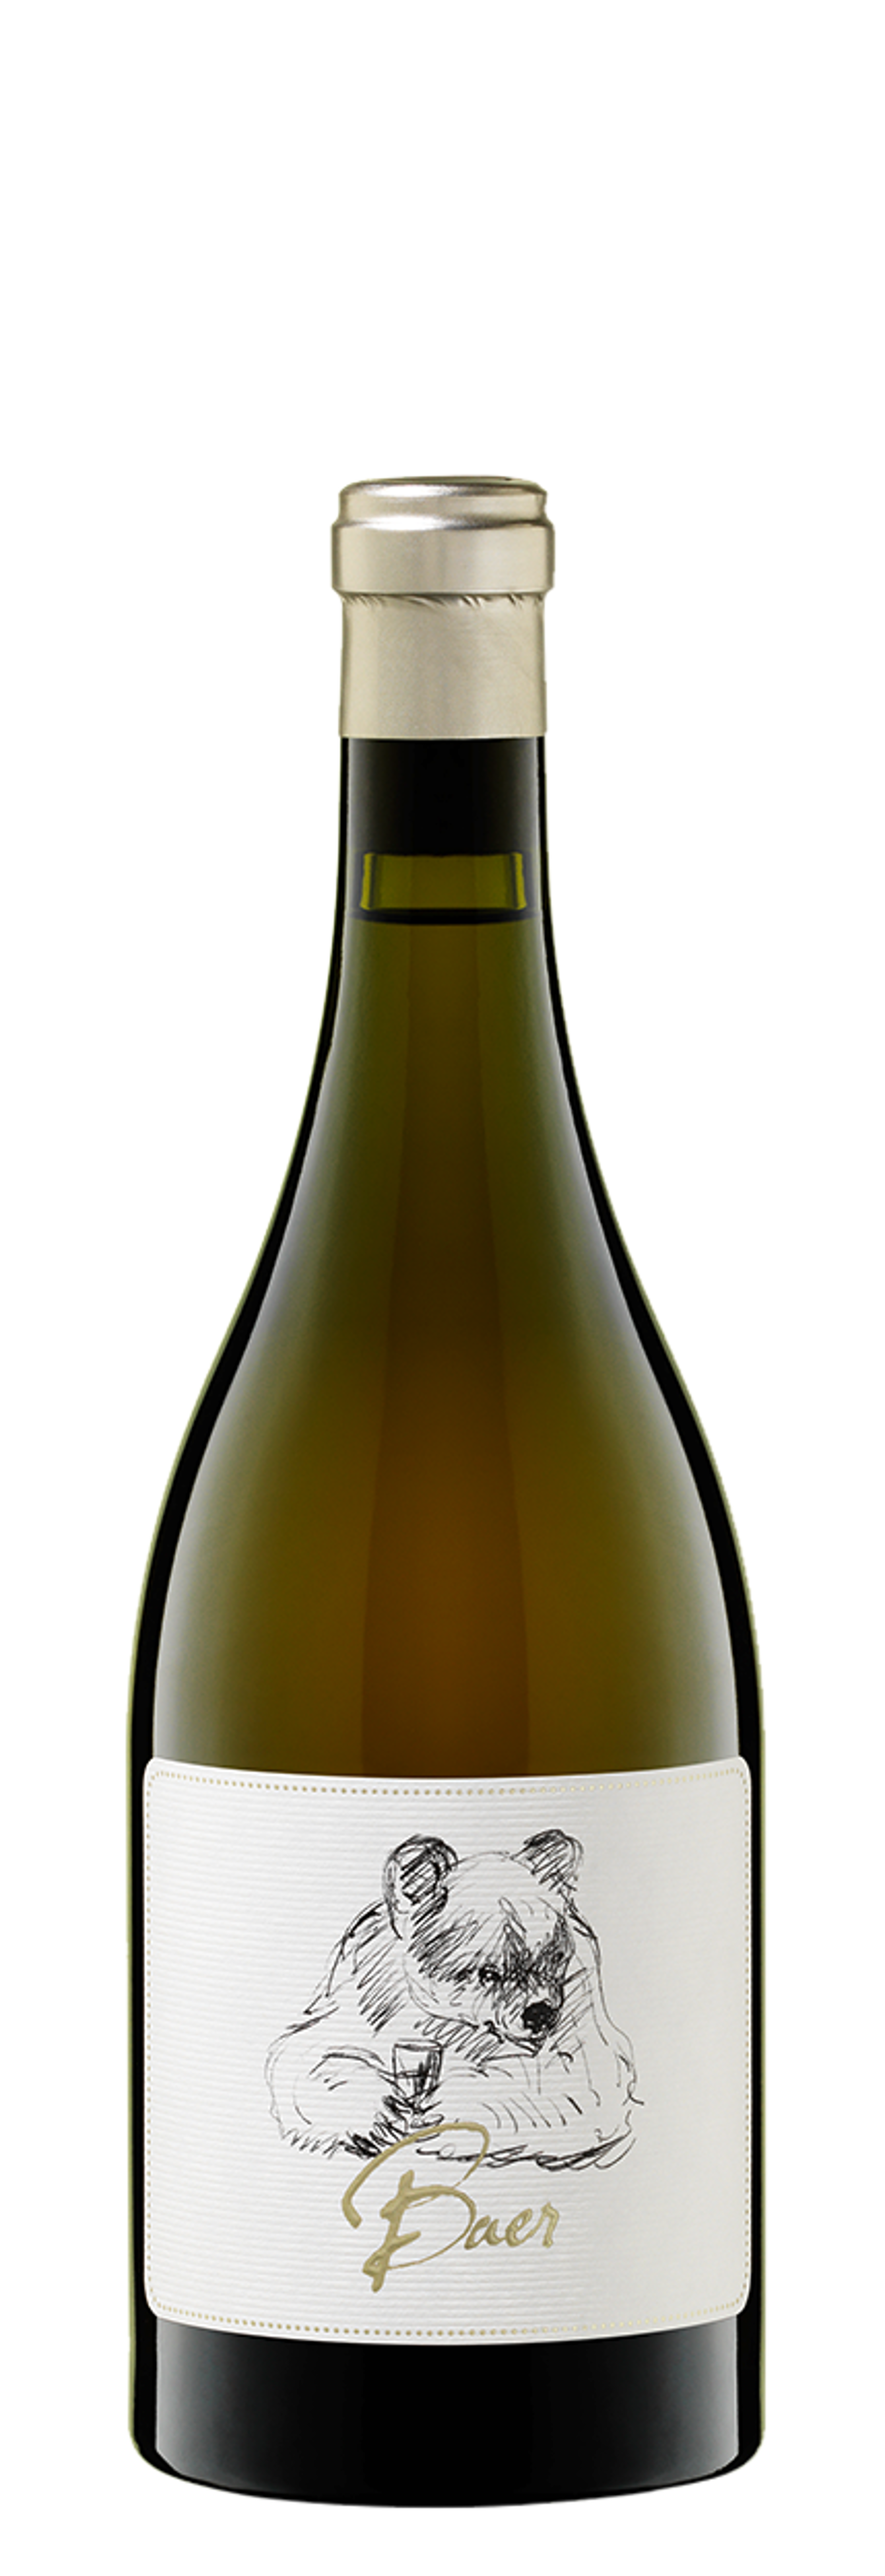 Baer - Sauvignon Blanc 2016